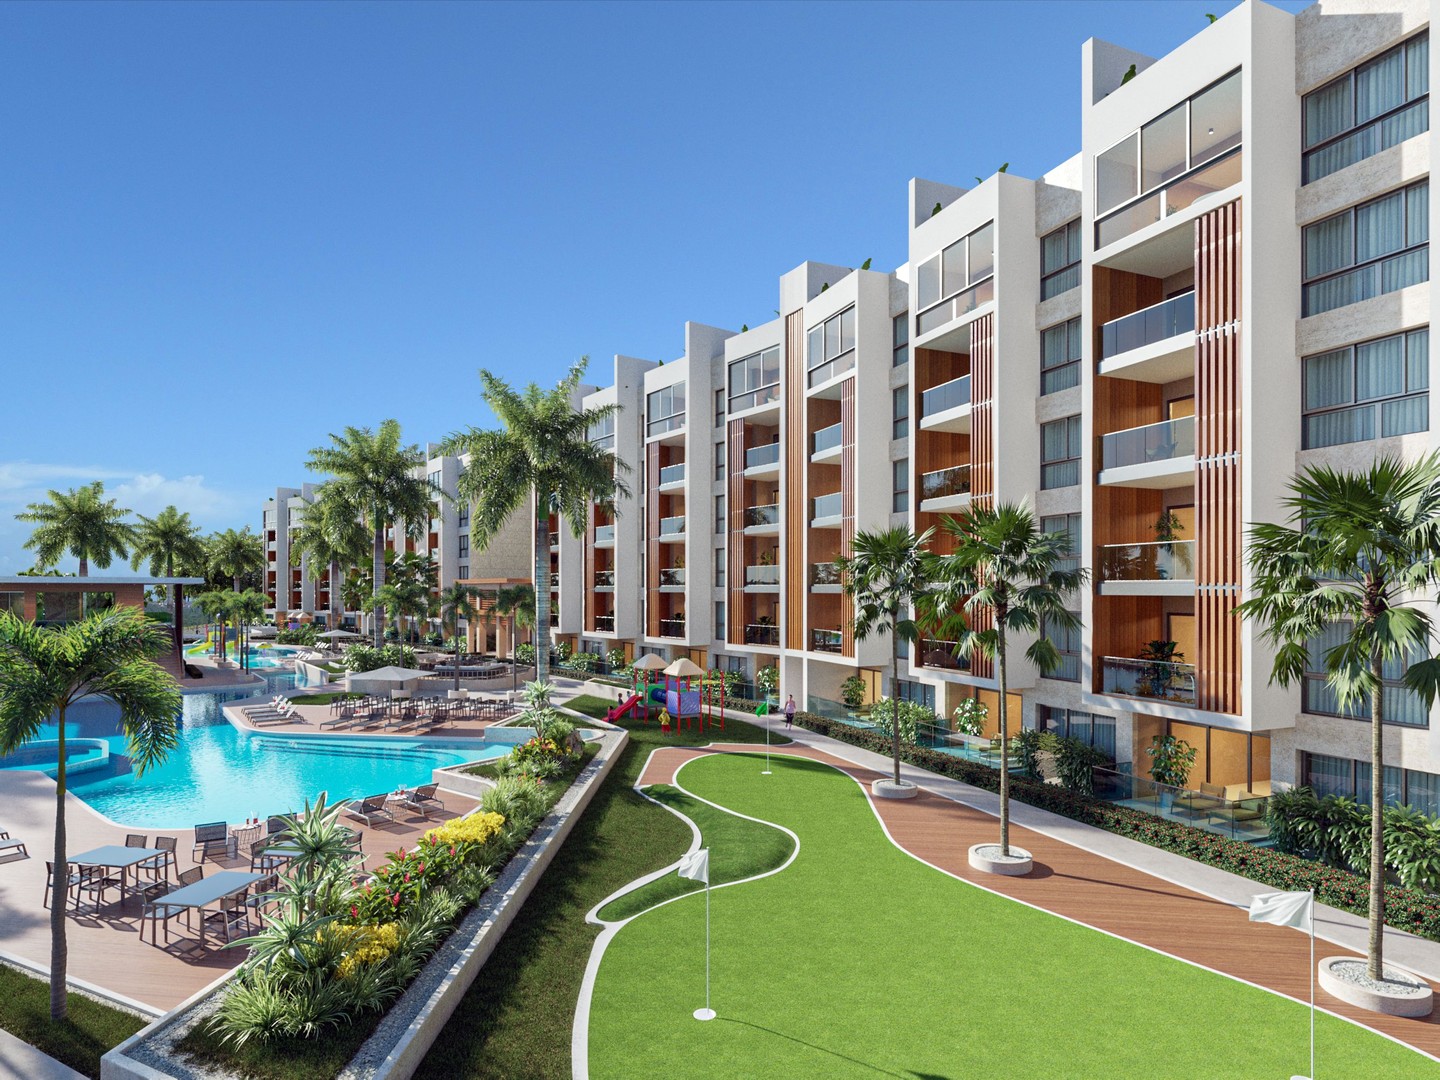 apartamentos - Apartamento Exclusivo Disponible en Cap Cana: Vive el Paraíso Caribeño 0